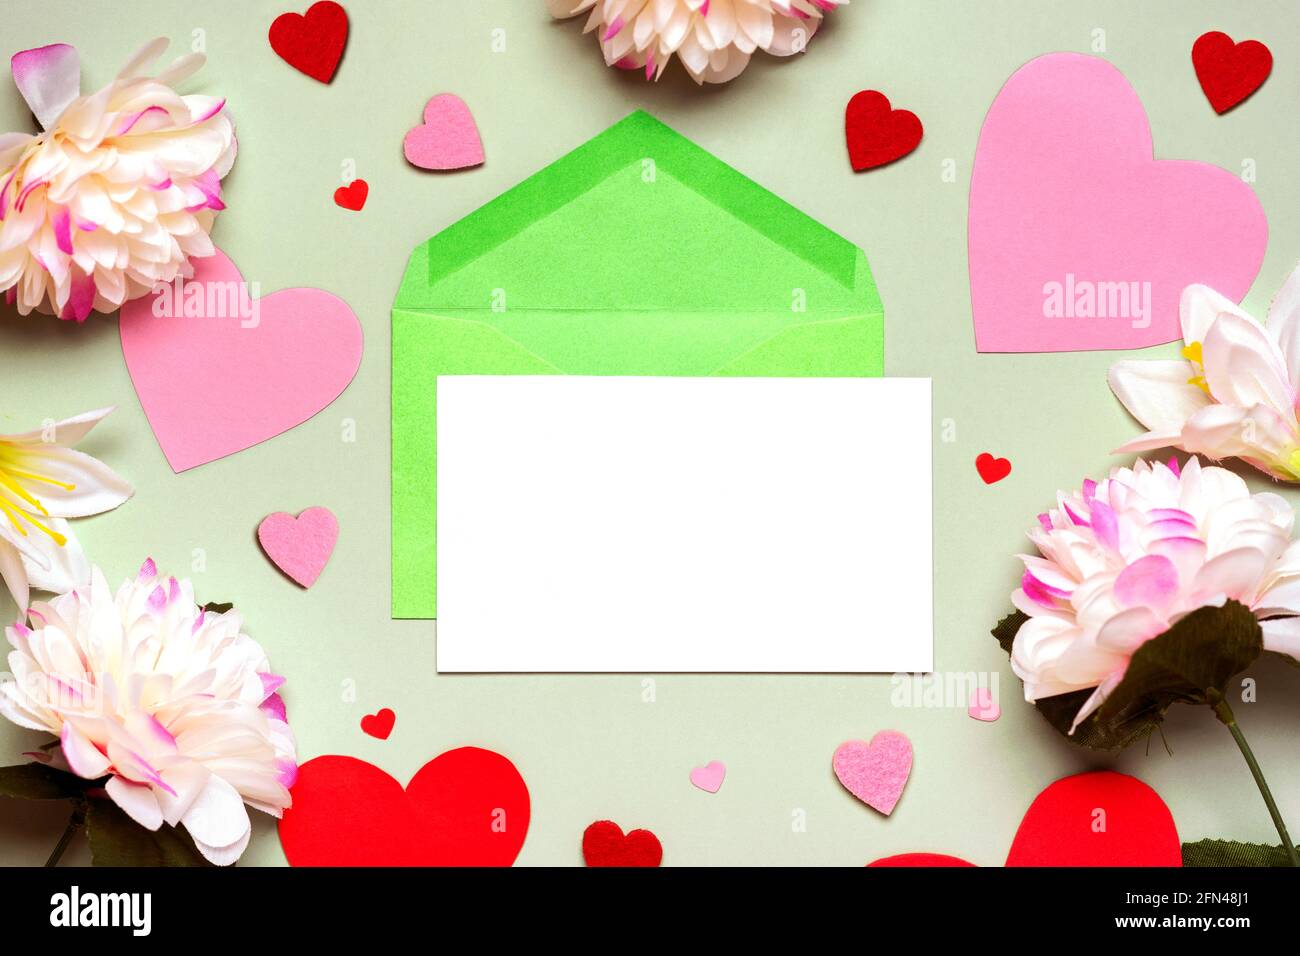 Grußkarte. Grüner Umschlag und weißes Papier mit Kopierraum, Blumen und Herzen auf grünem Hintergrund. Herzlichen Glückwunsch zum Muttertag, Geburtstag und Stockfoto